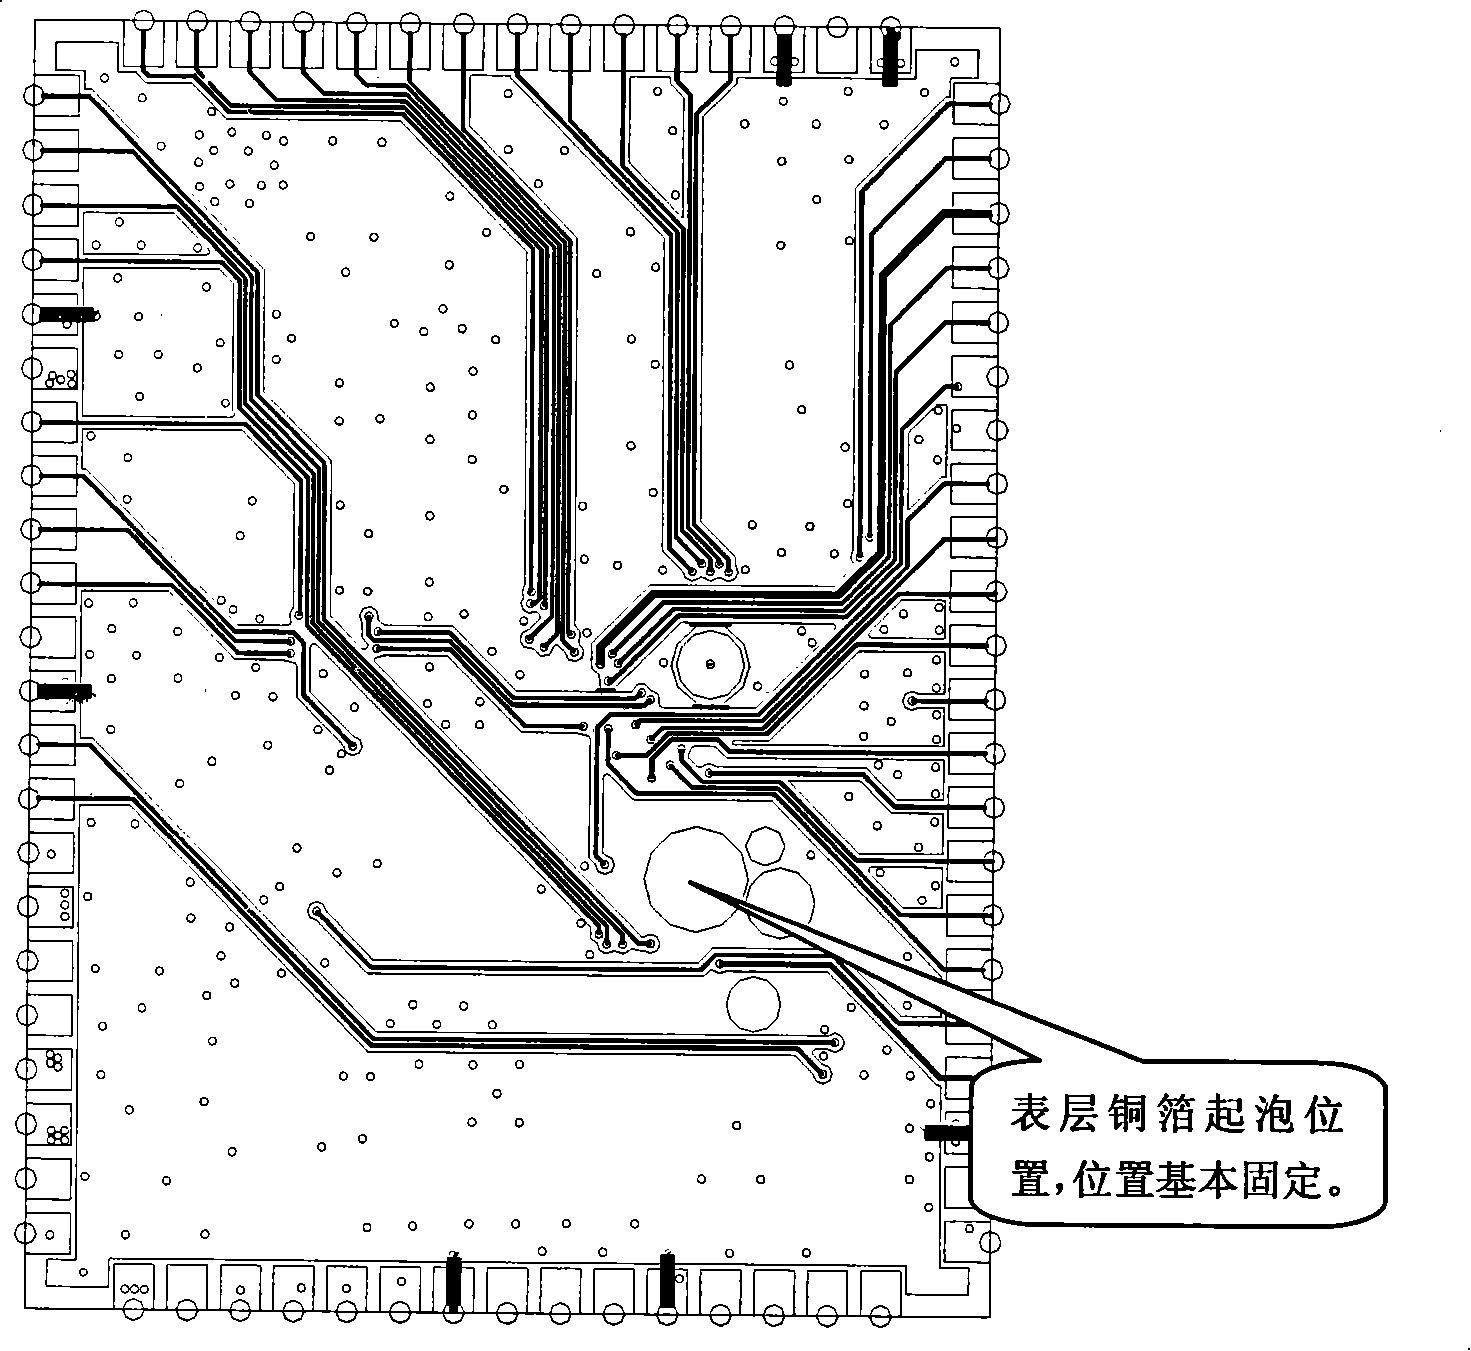 Design producing method of multi-layer printed circuit board